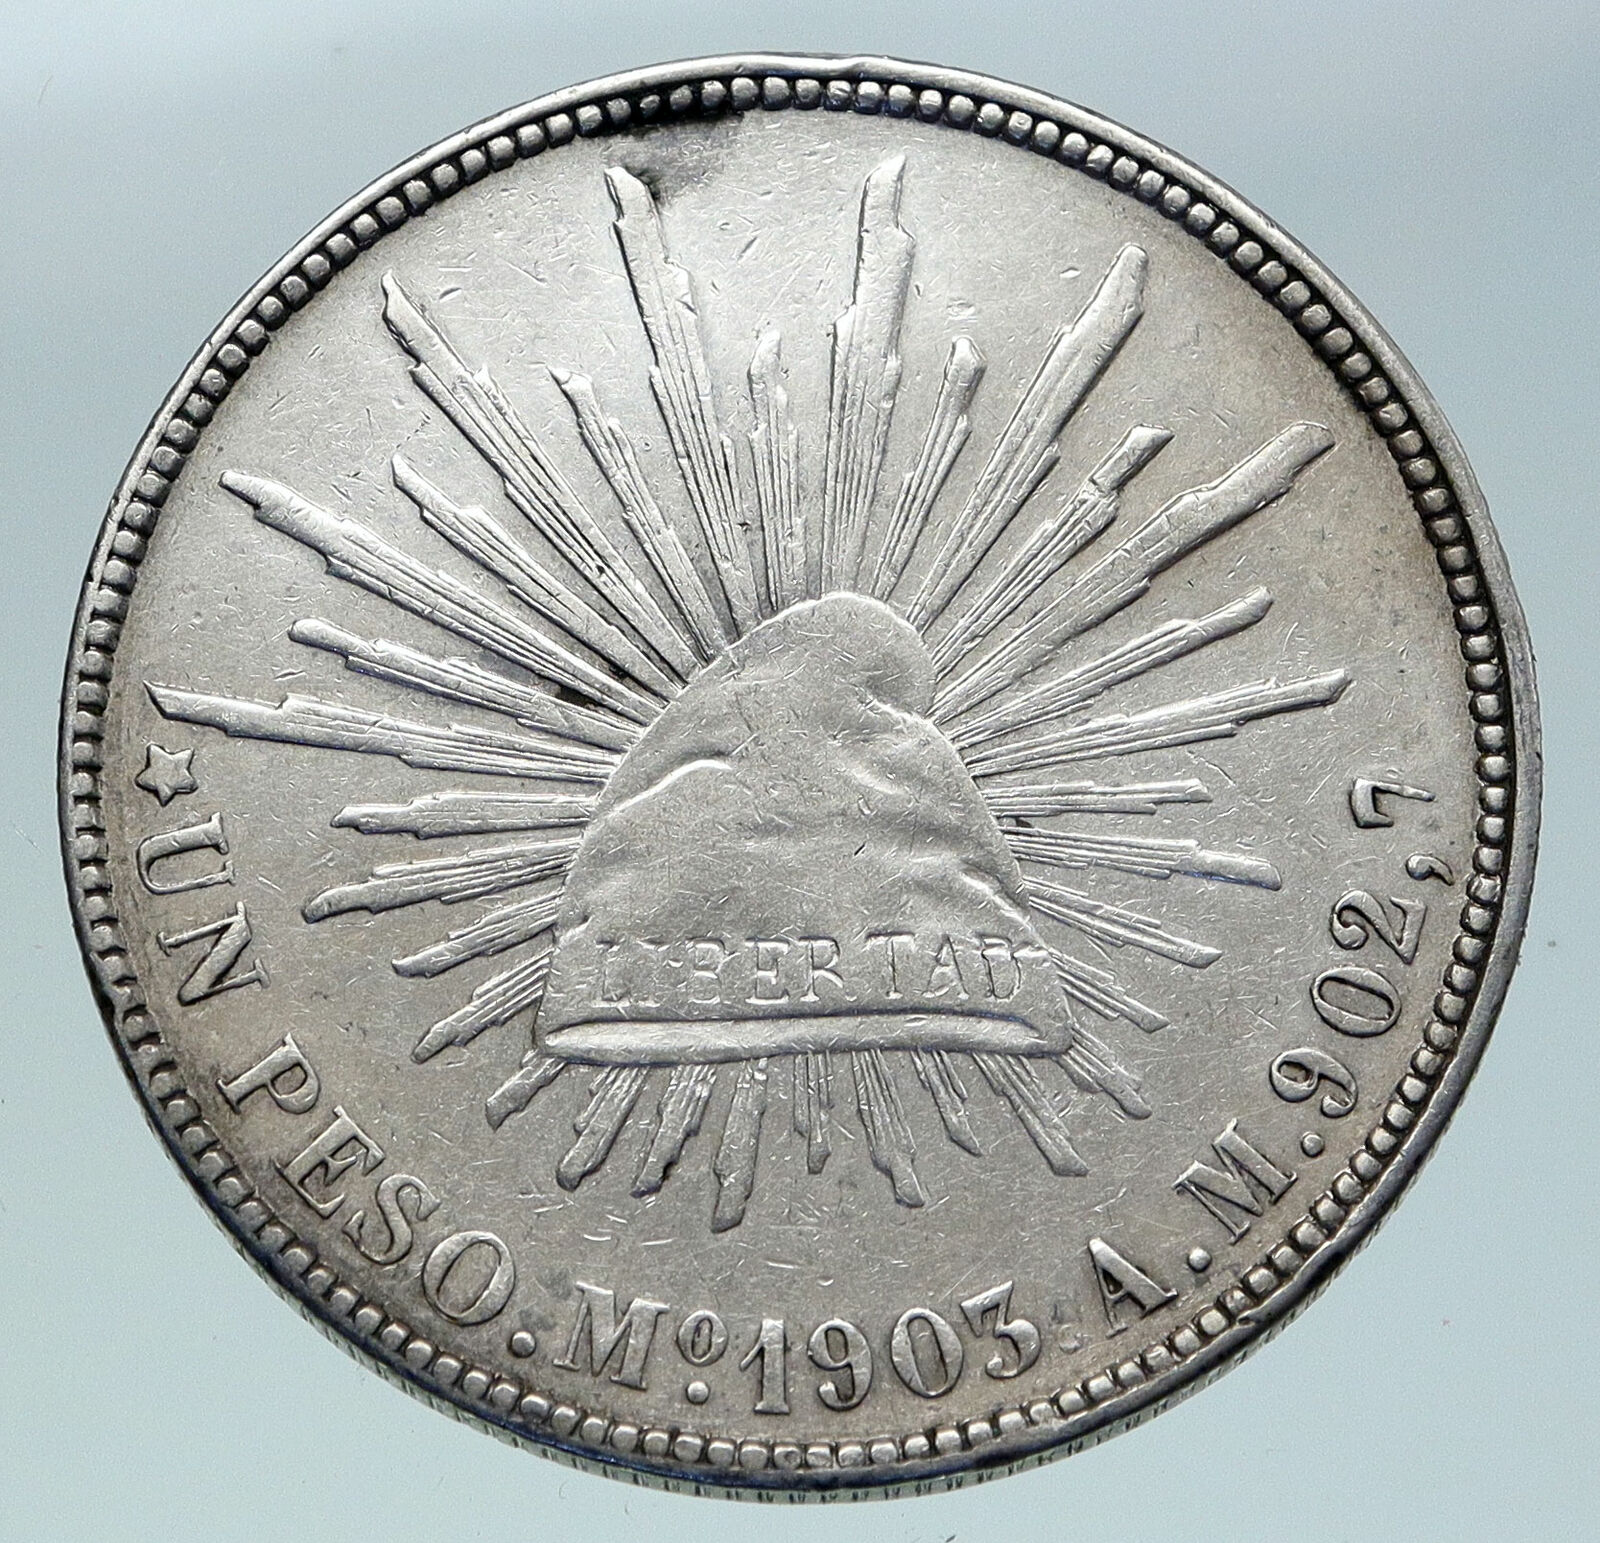 1903 Mo AM MEXICO Large Eagle Sun Antique Mexican OLD Silver Peso Coin i86503